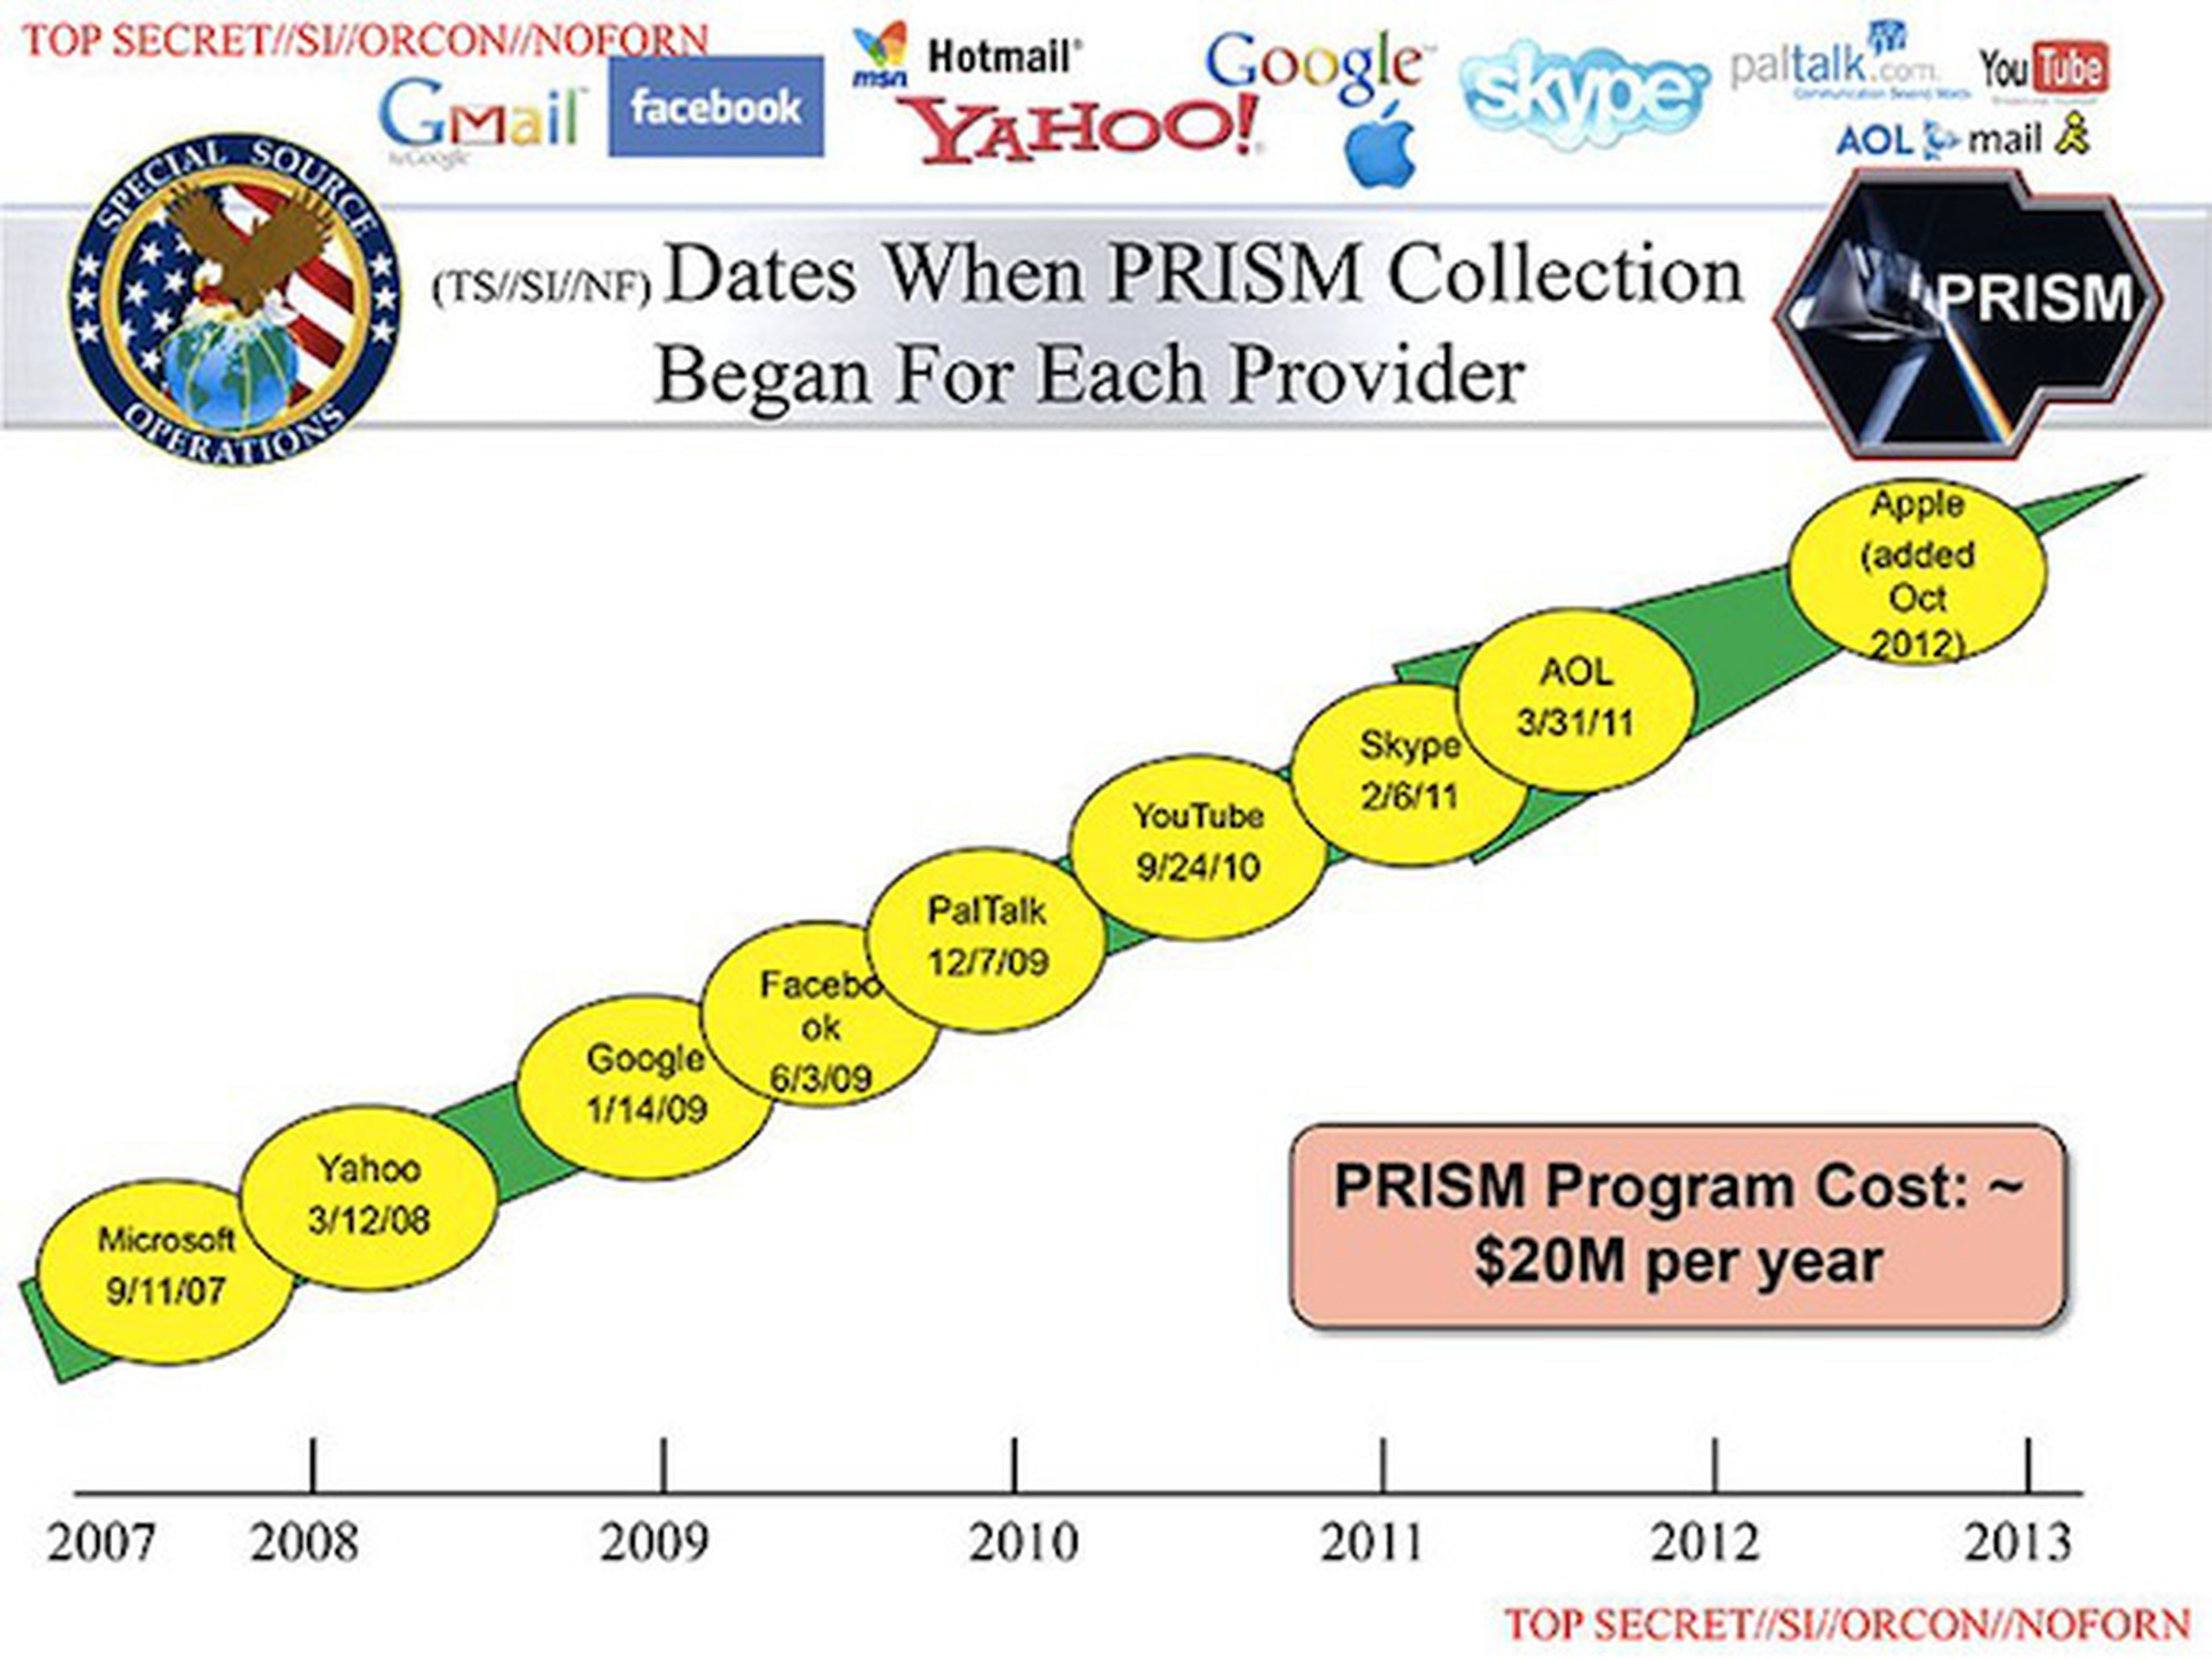 Google quiere dar más información acerca del proyecto PRISM